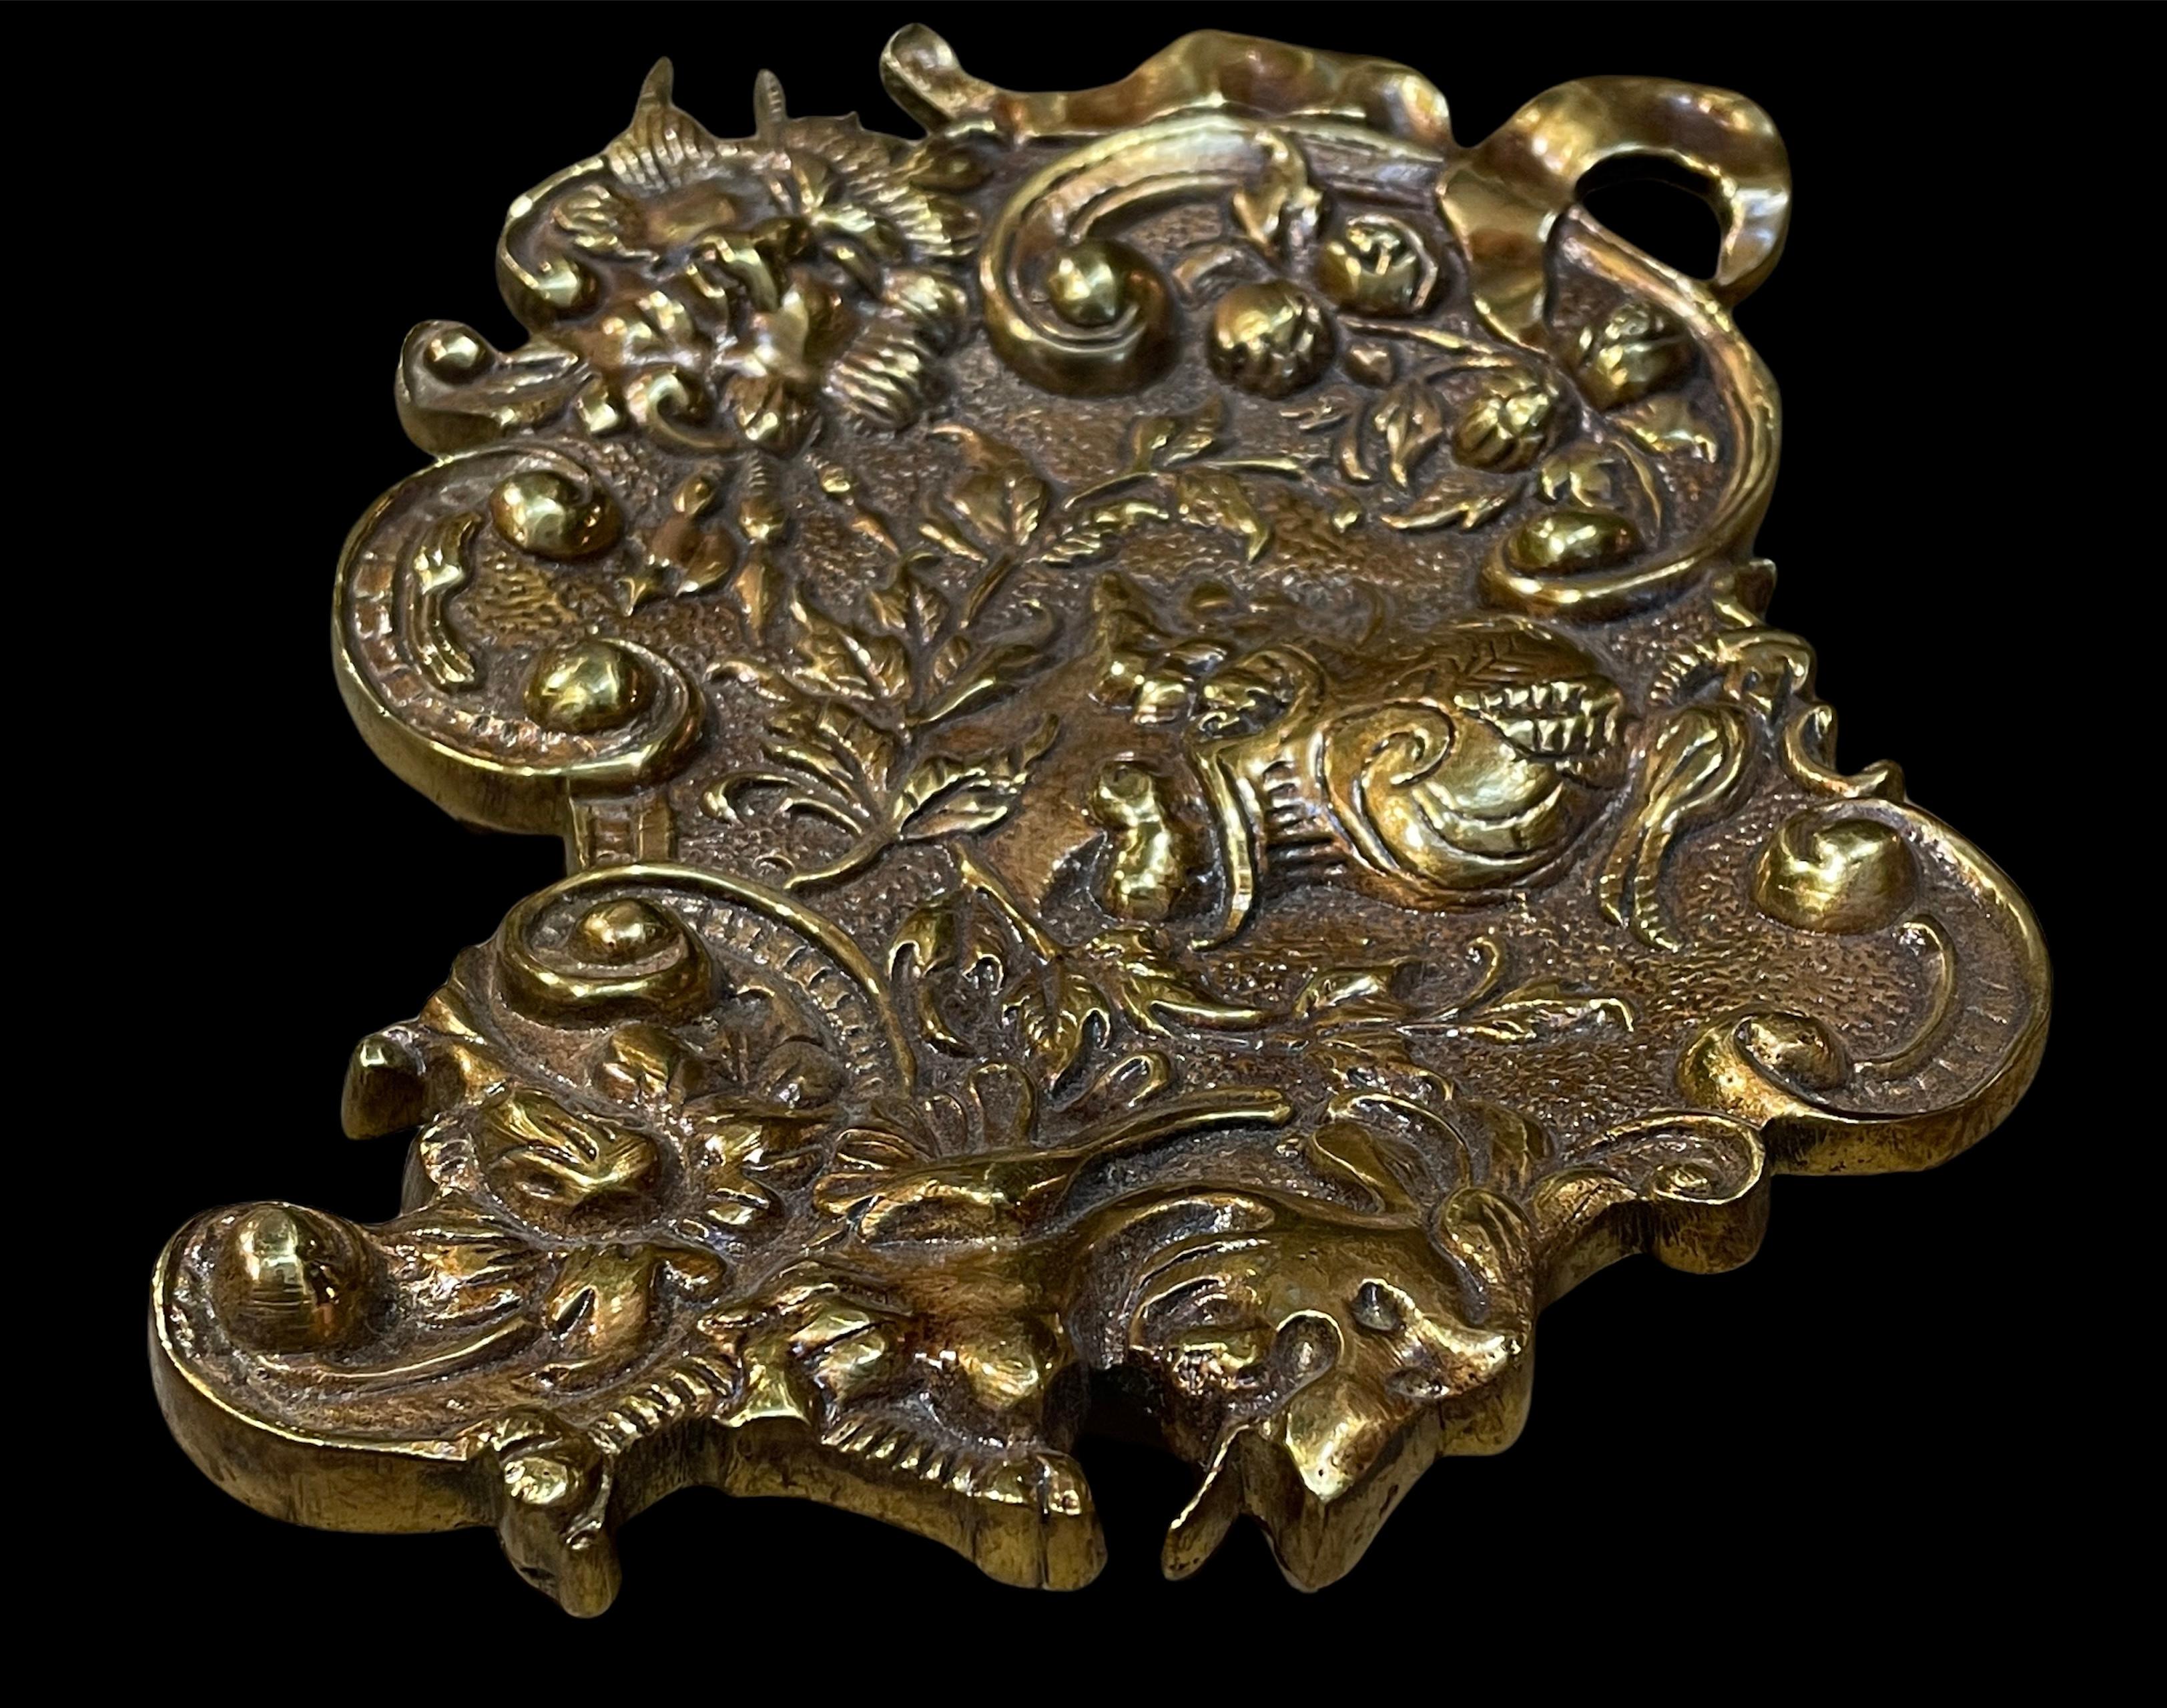 Dies ist ein Rokoko-Stil Bronze asymmetrische Ring Schale oder Federhalter. Sie zeigt in der Mitte das repoussierte Profil eines römischen Kriegers. Ringsherum befinden sich einige C-Rollen mit Rocailles, Blättern und Bändern. Die Schale steht auf